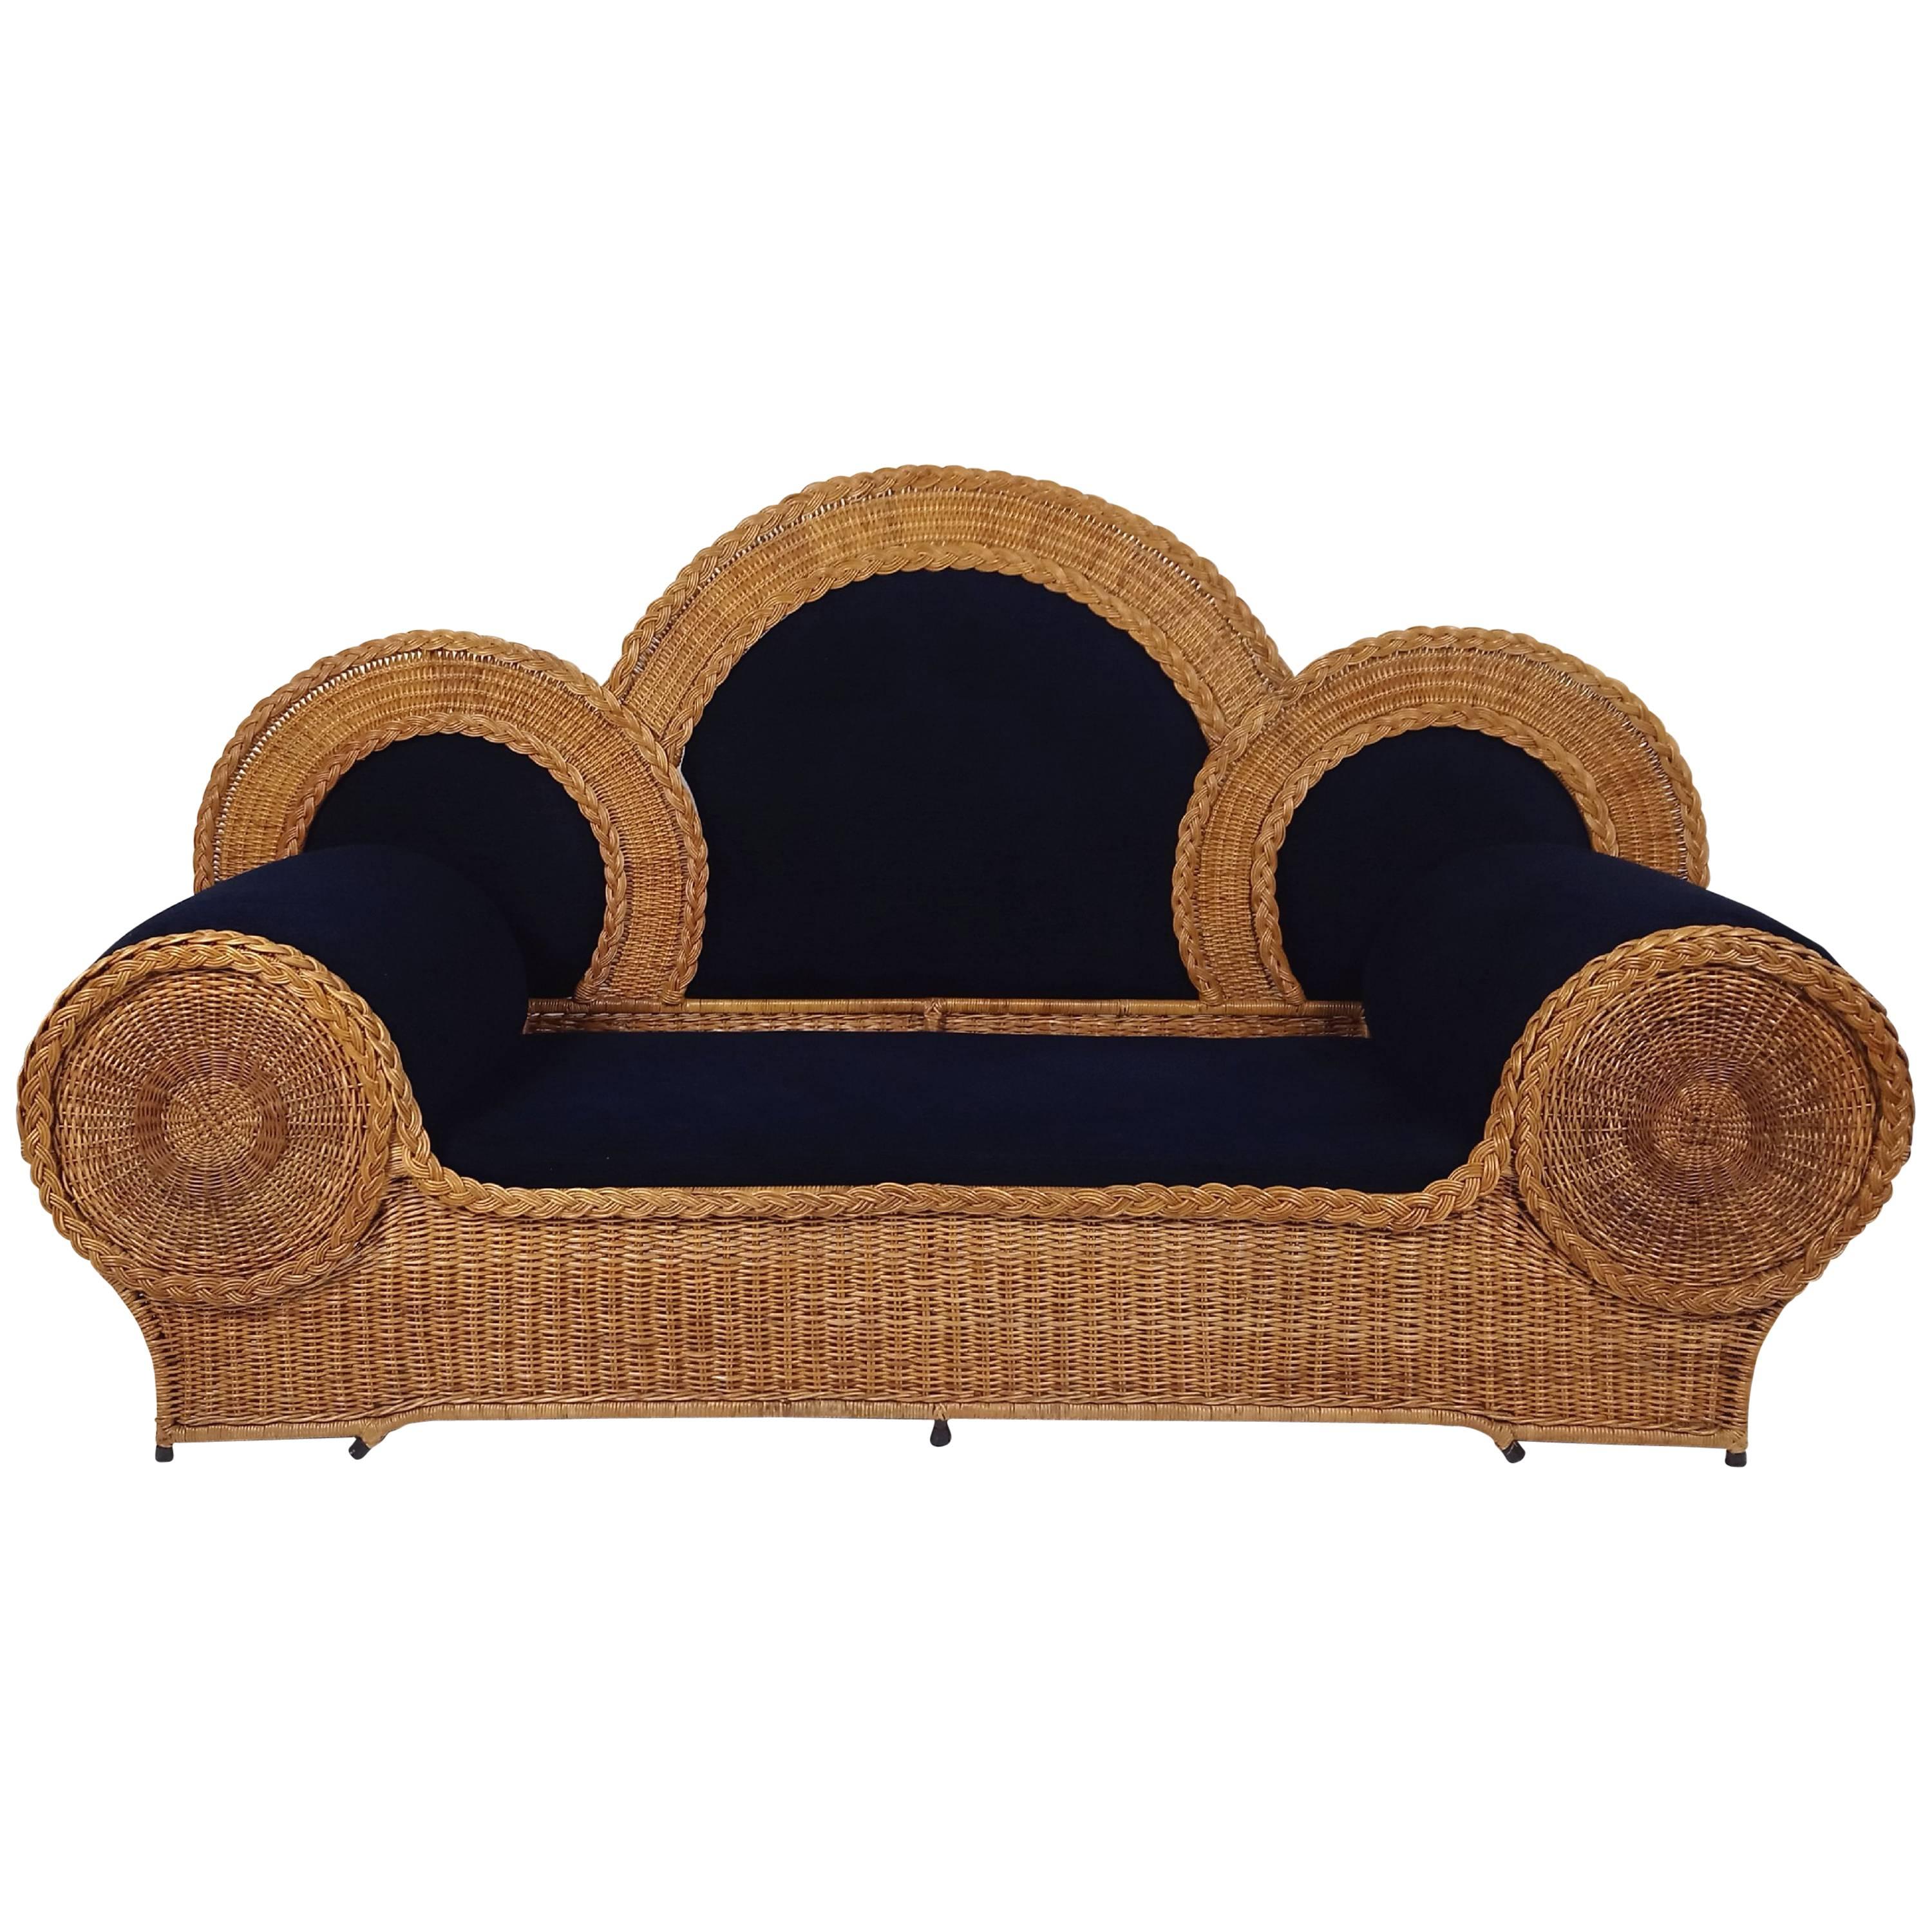 Mid-20th Century Biba Wicker Sofa